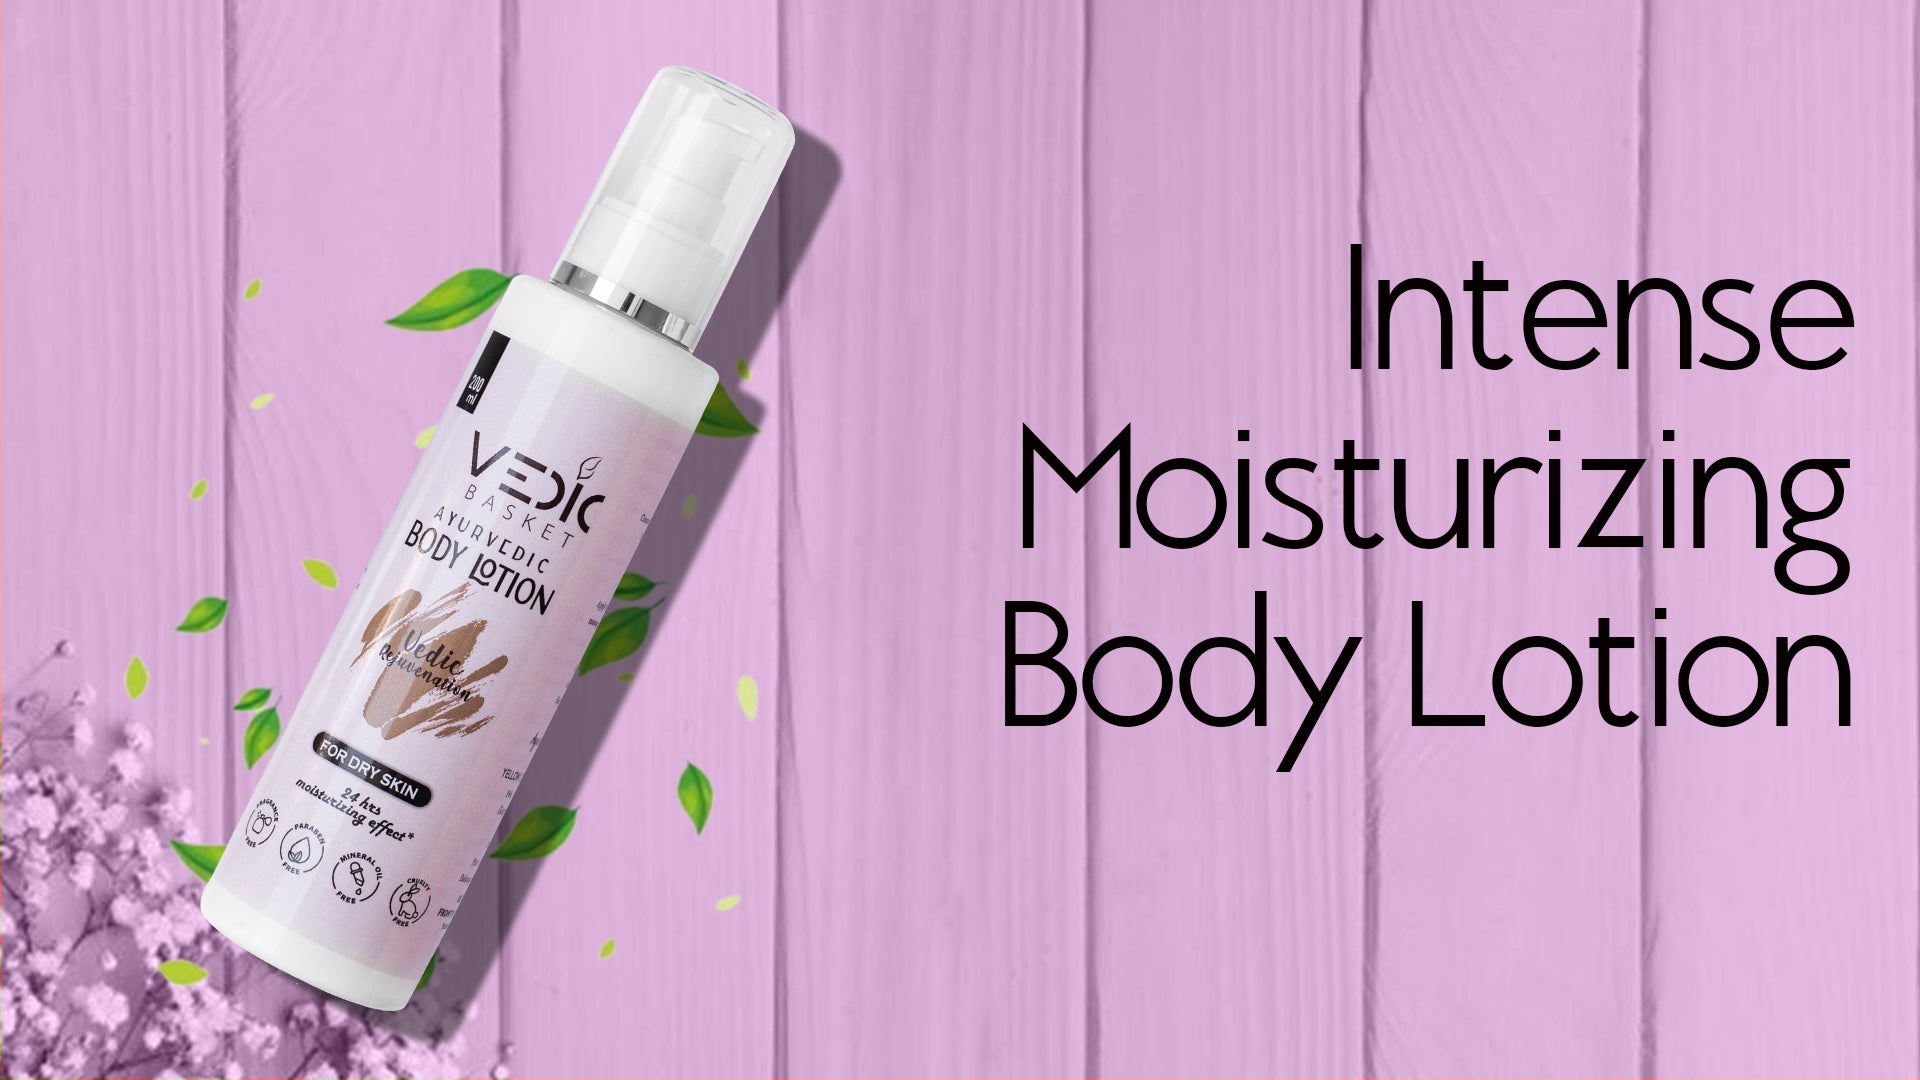 instense moisturizing body lotion for diabetic skin, marks